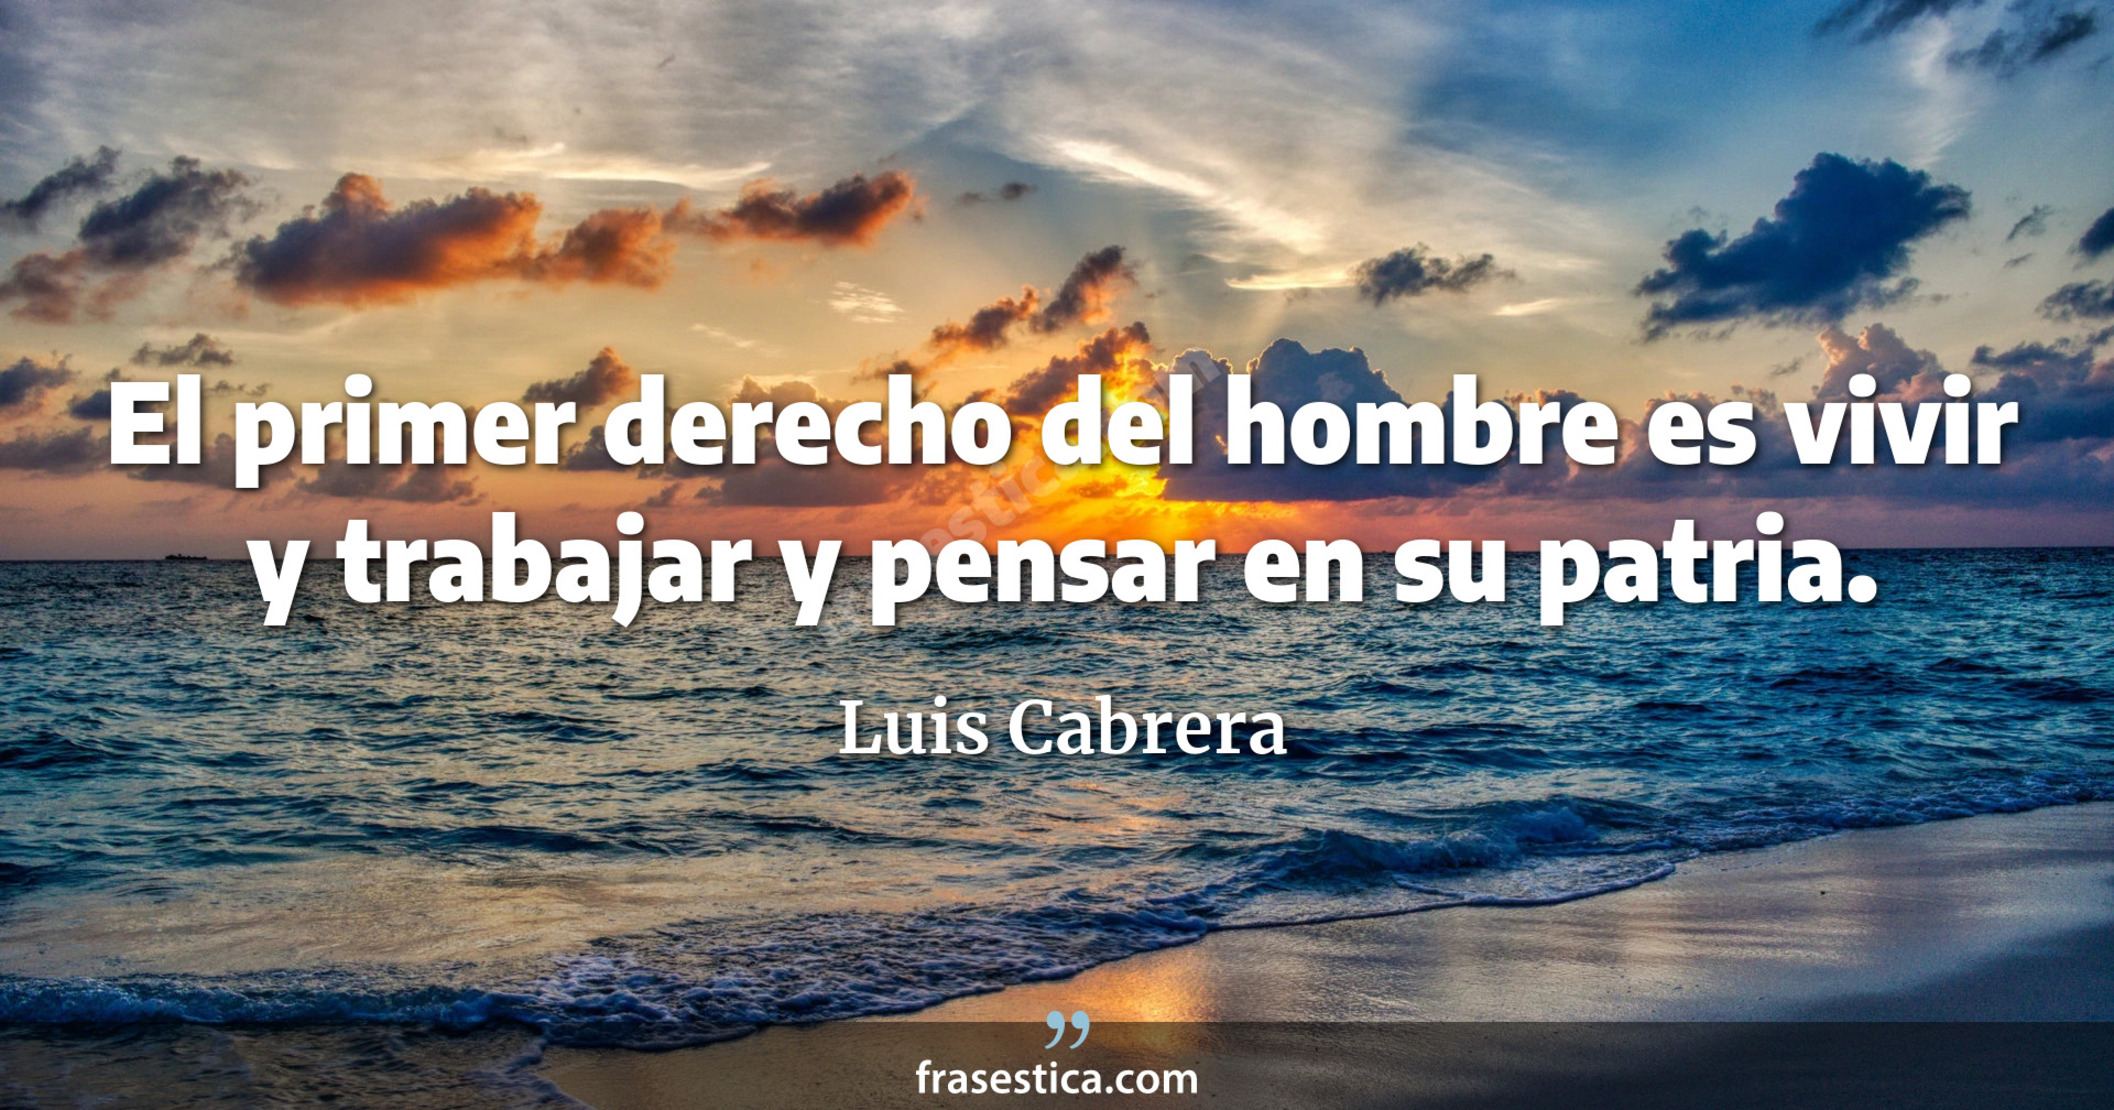 El primer derecho del hombre es vivir y trabajar y pensar en su patria. - Luis Cabrera